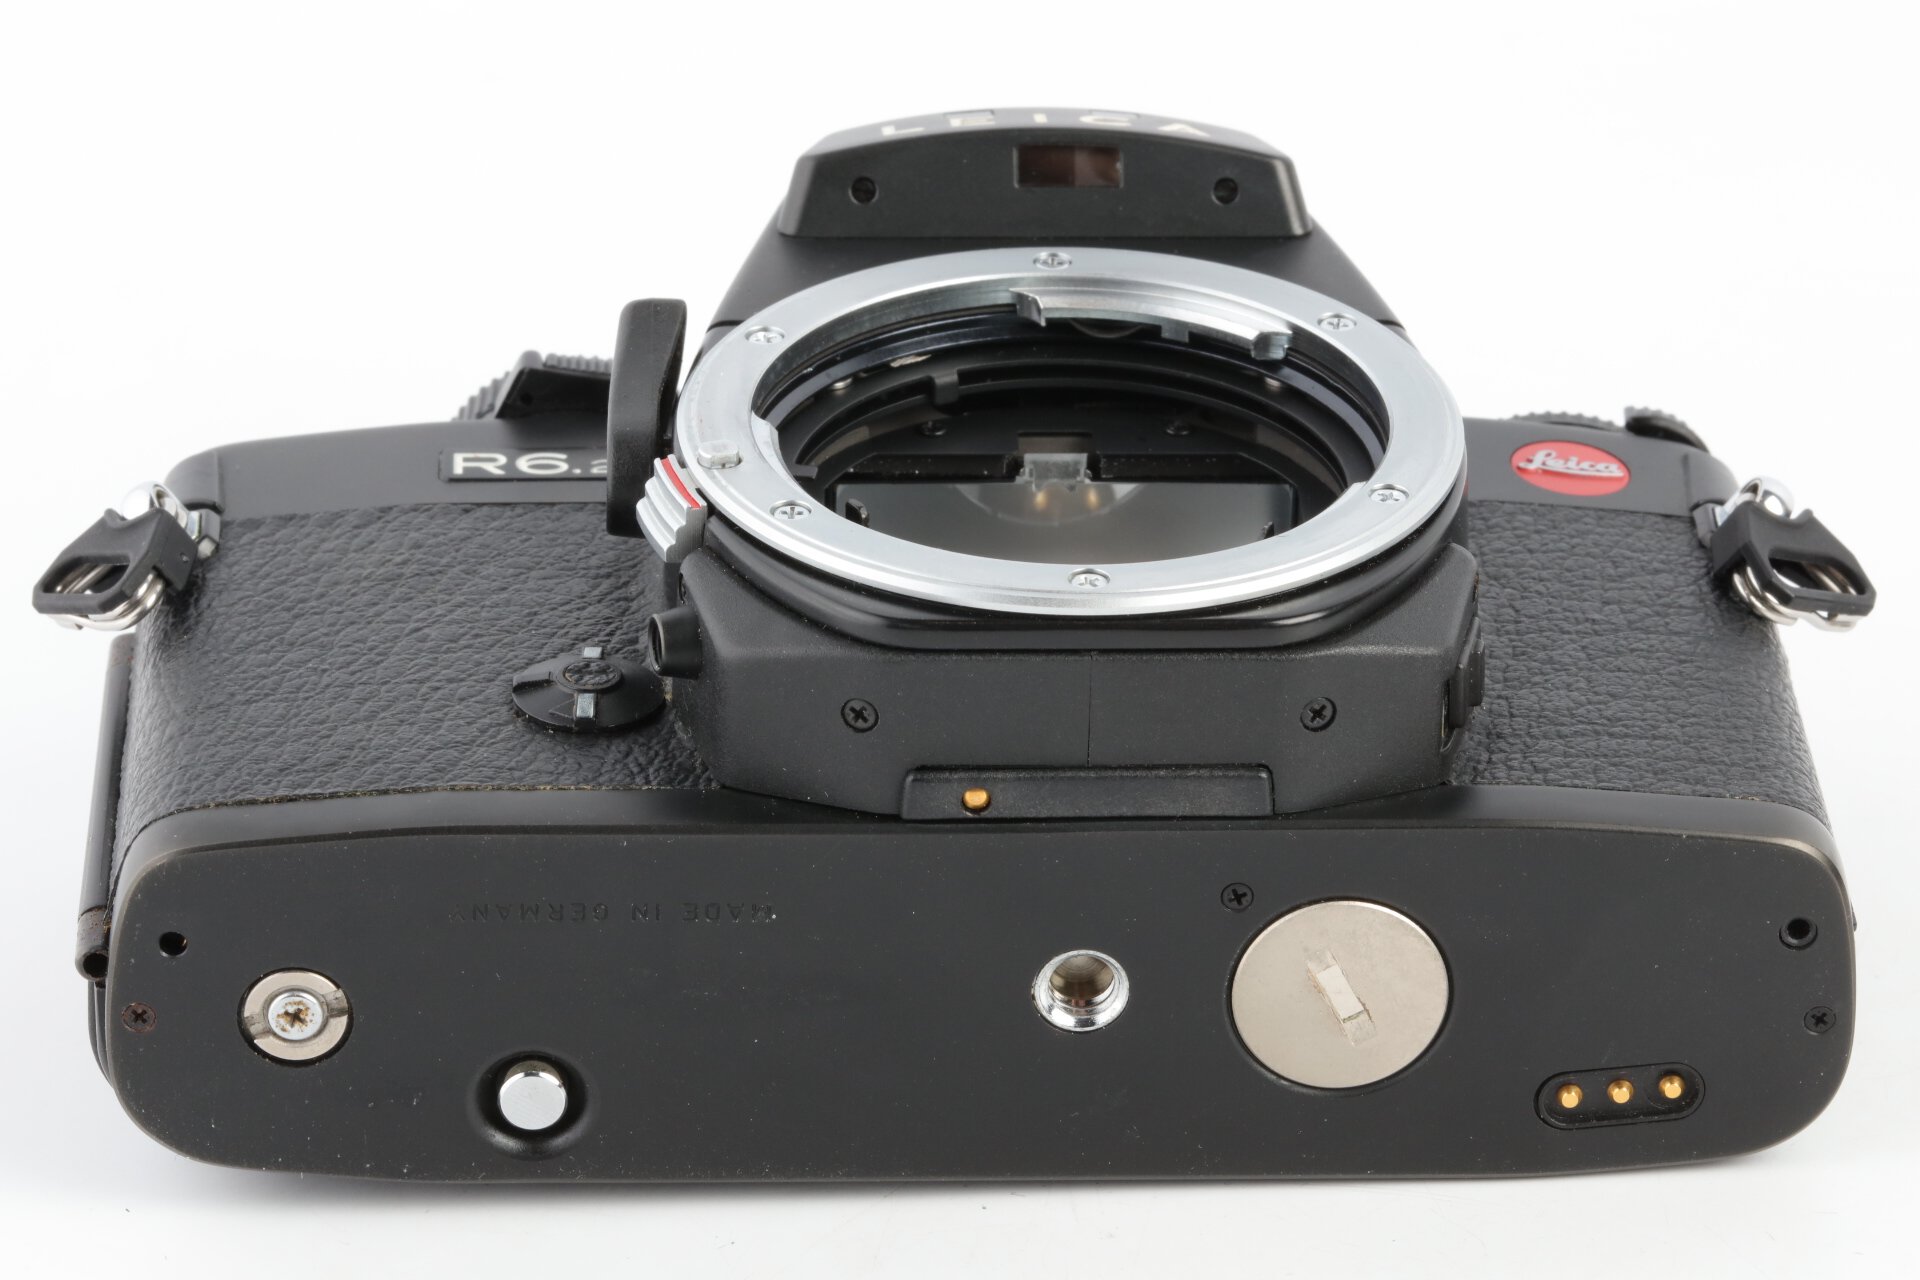 Leica R6.2 Gehäuse schwarz